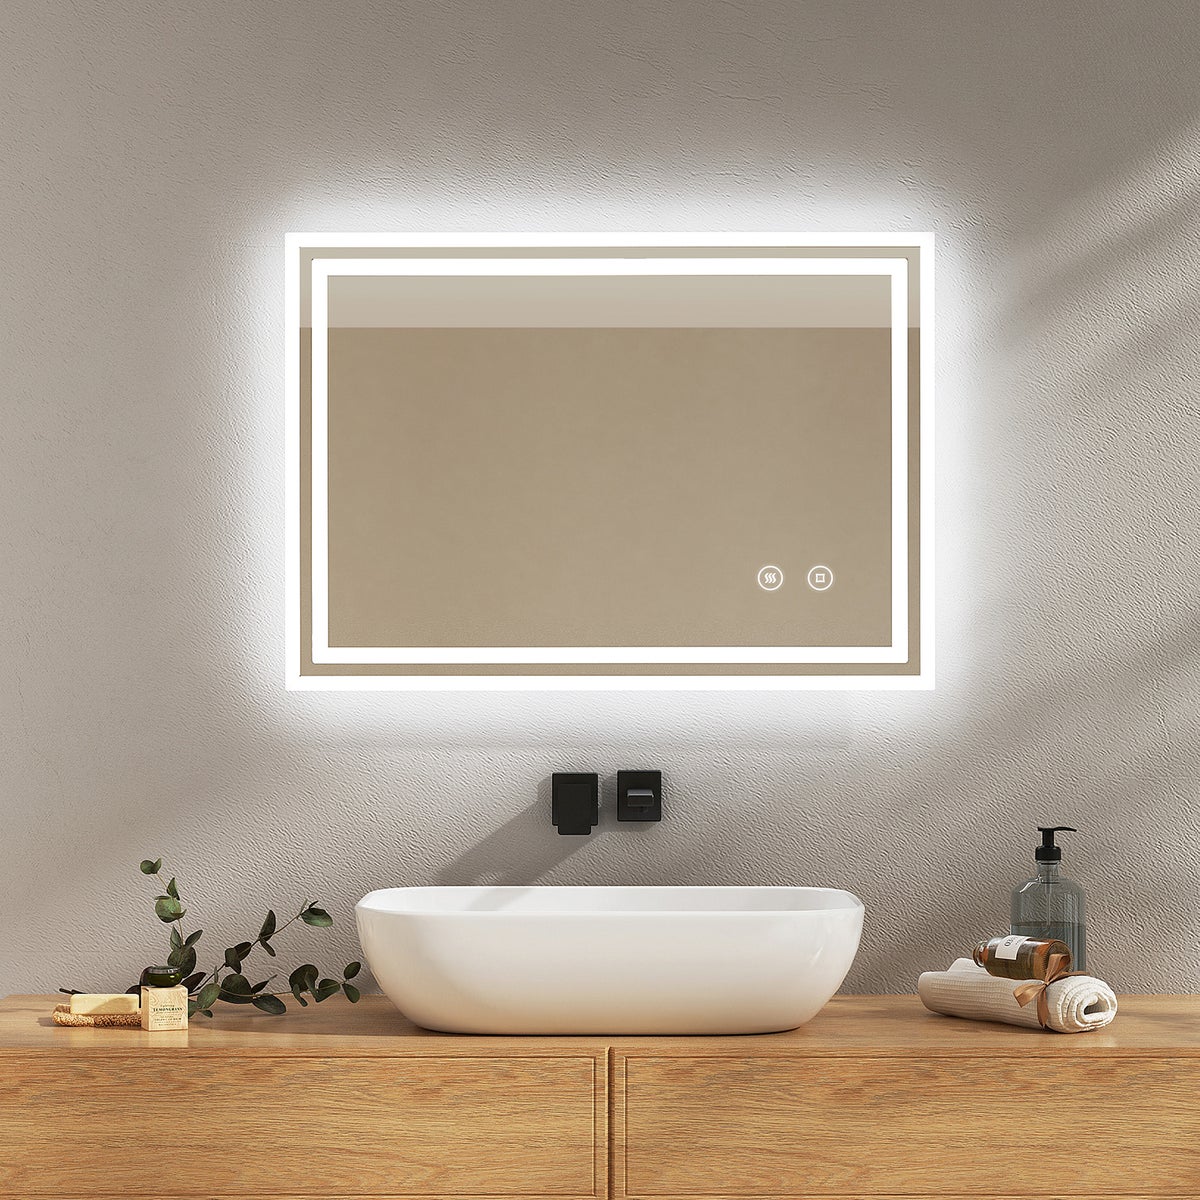 EMKE Badspiegel mit Touch 6500K LED-Beleuchtung eckig, Beschlagfrei, Helligkeit Einstellbar, Memory-Funktion, Horizontal&Vertical 70 x 50 cm